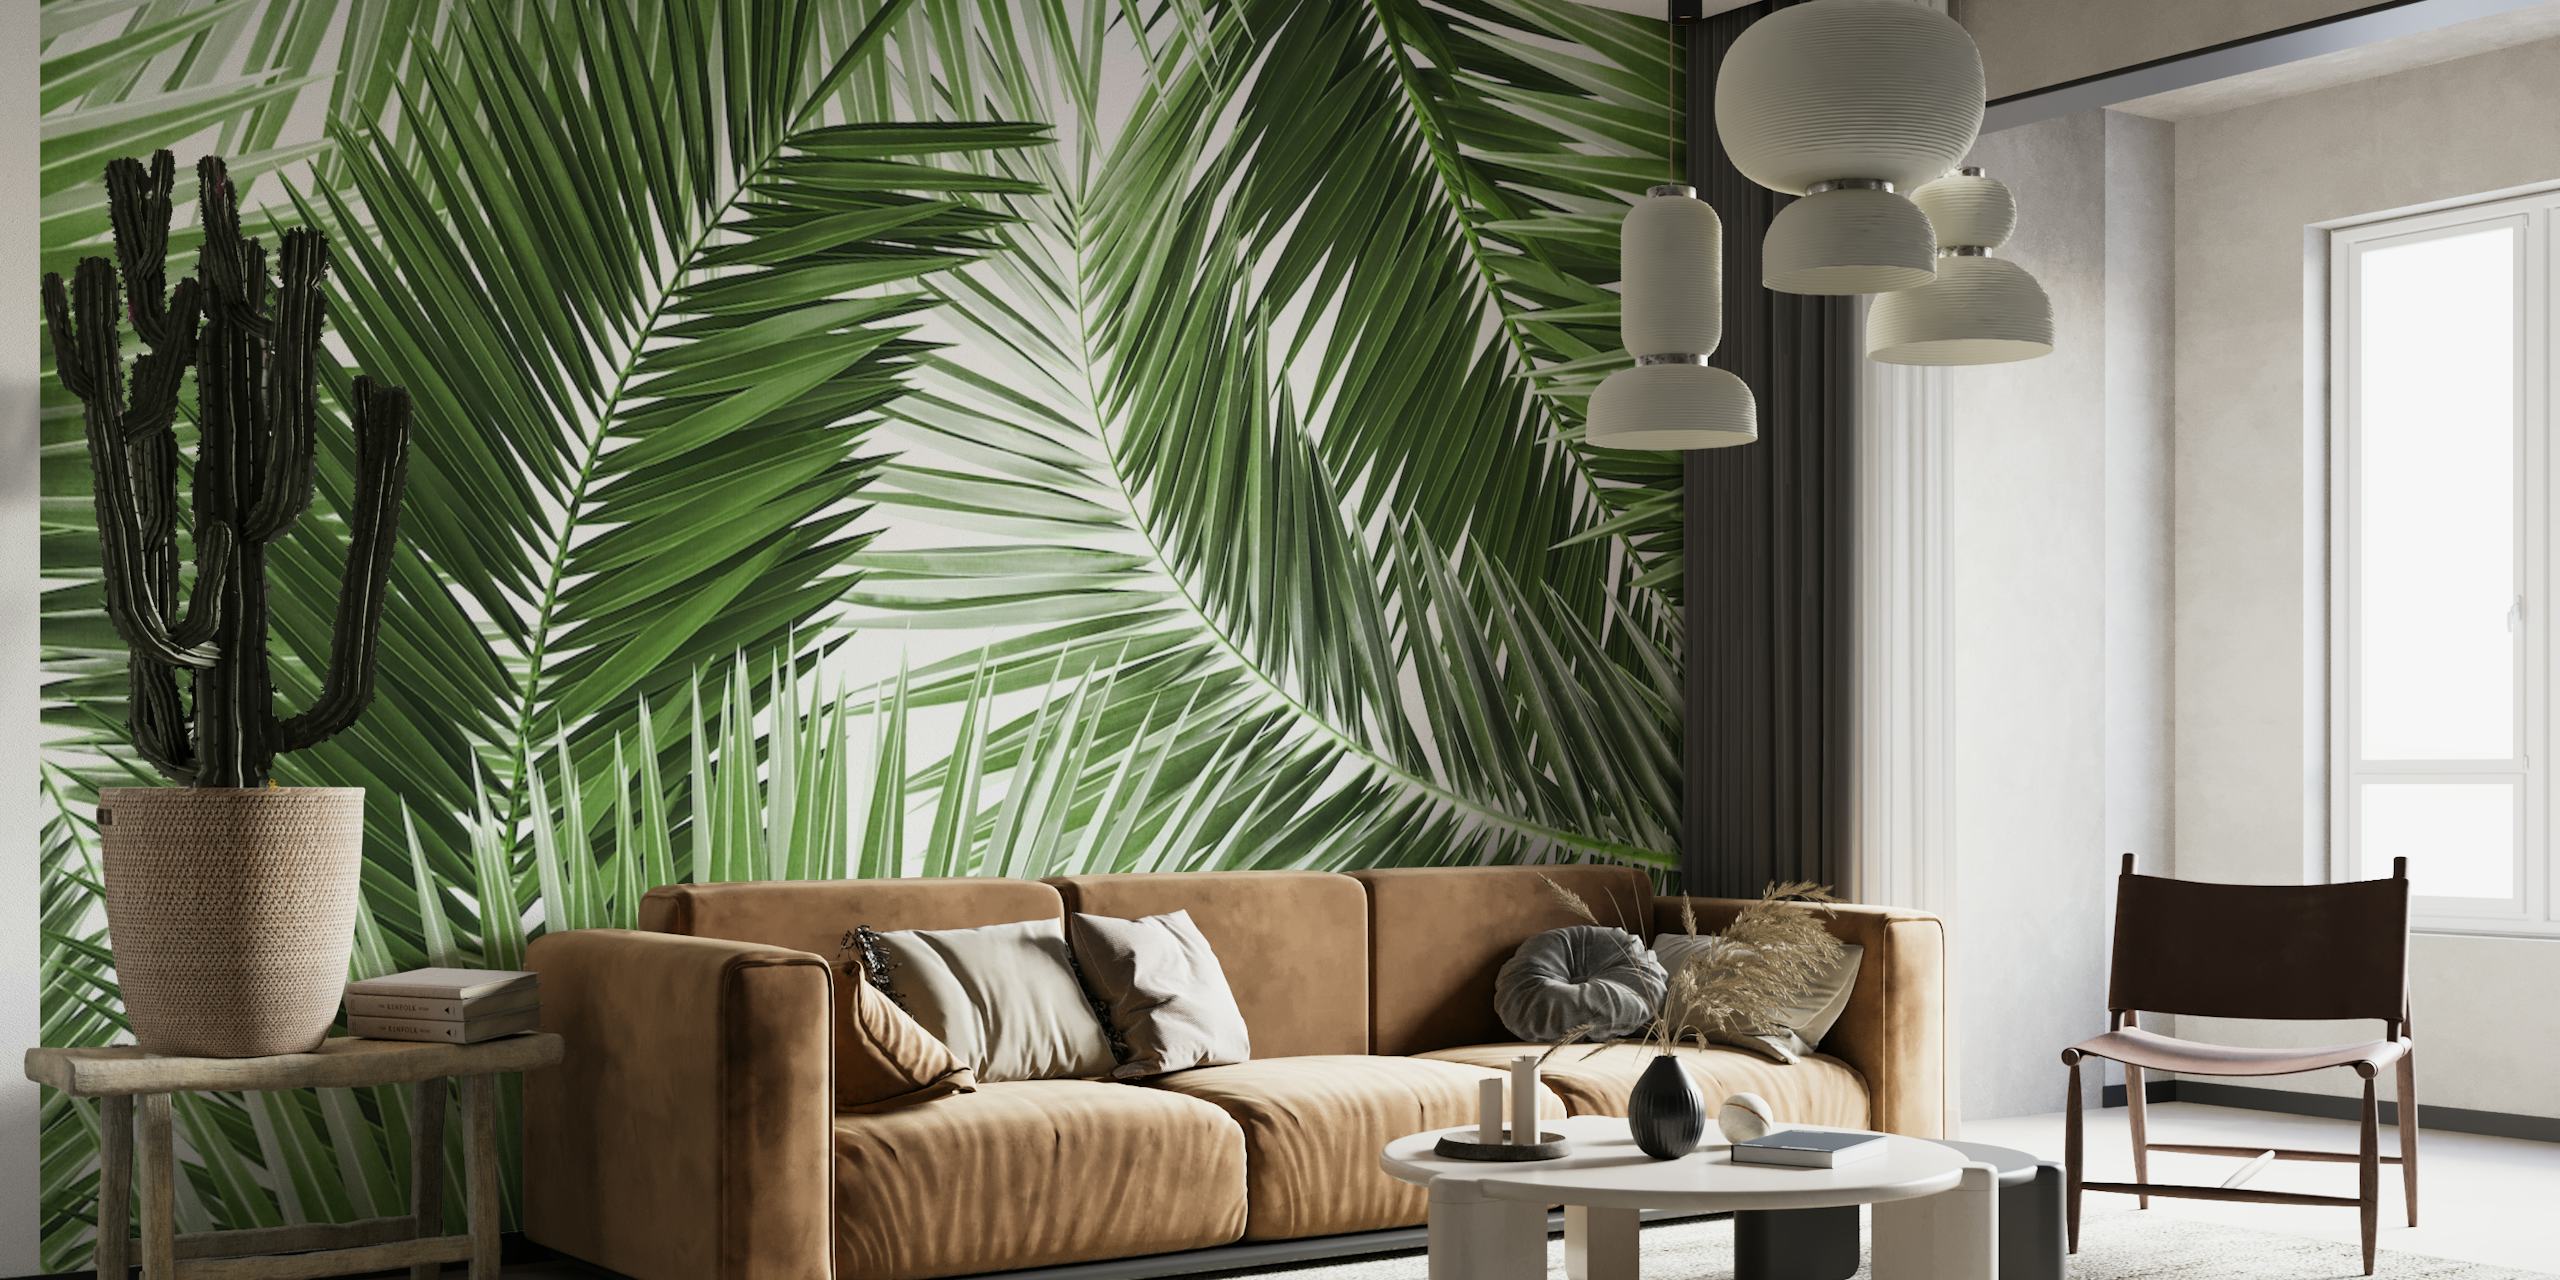 Fotomural con estampado de hojas de palmera verdes y exuberantes para decoración de interiores